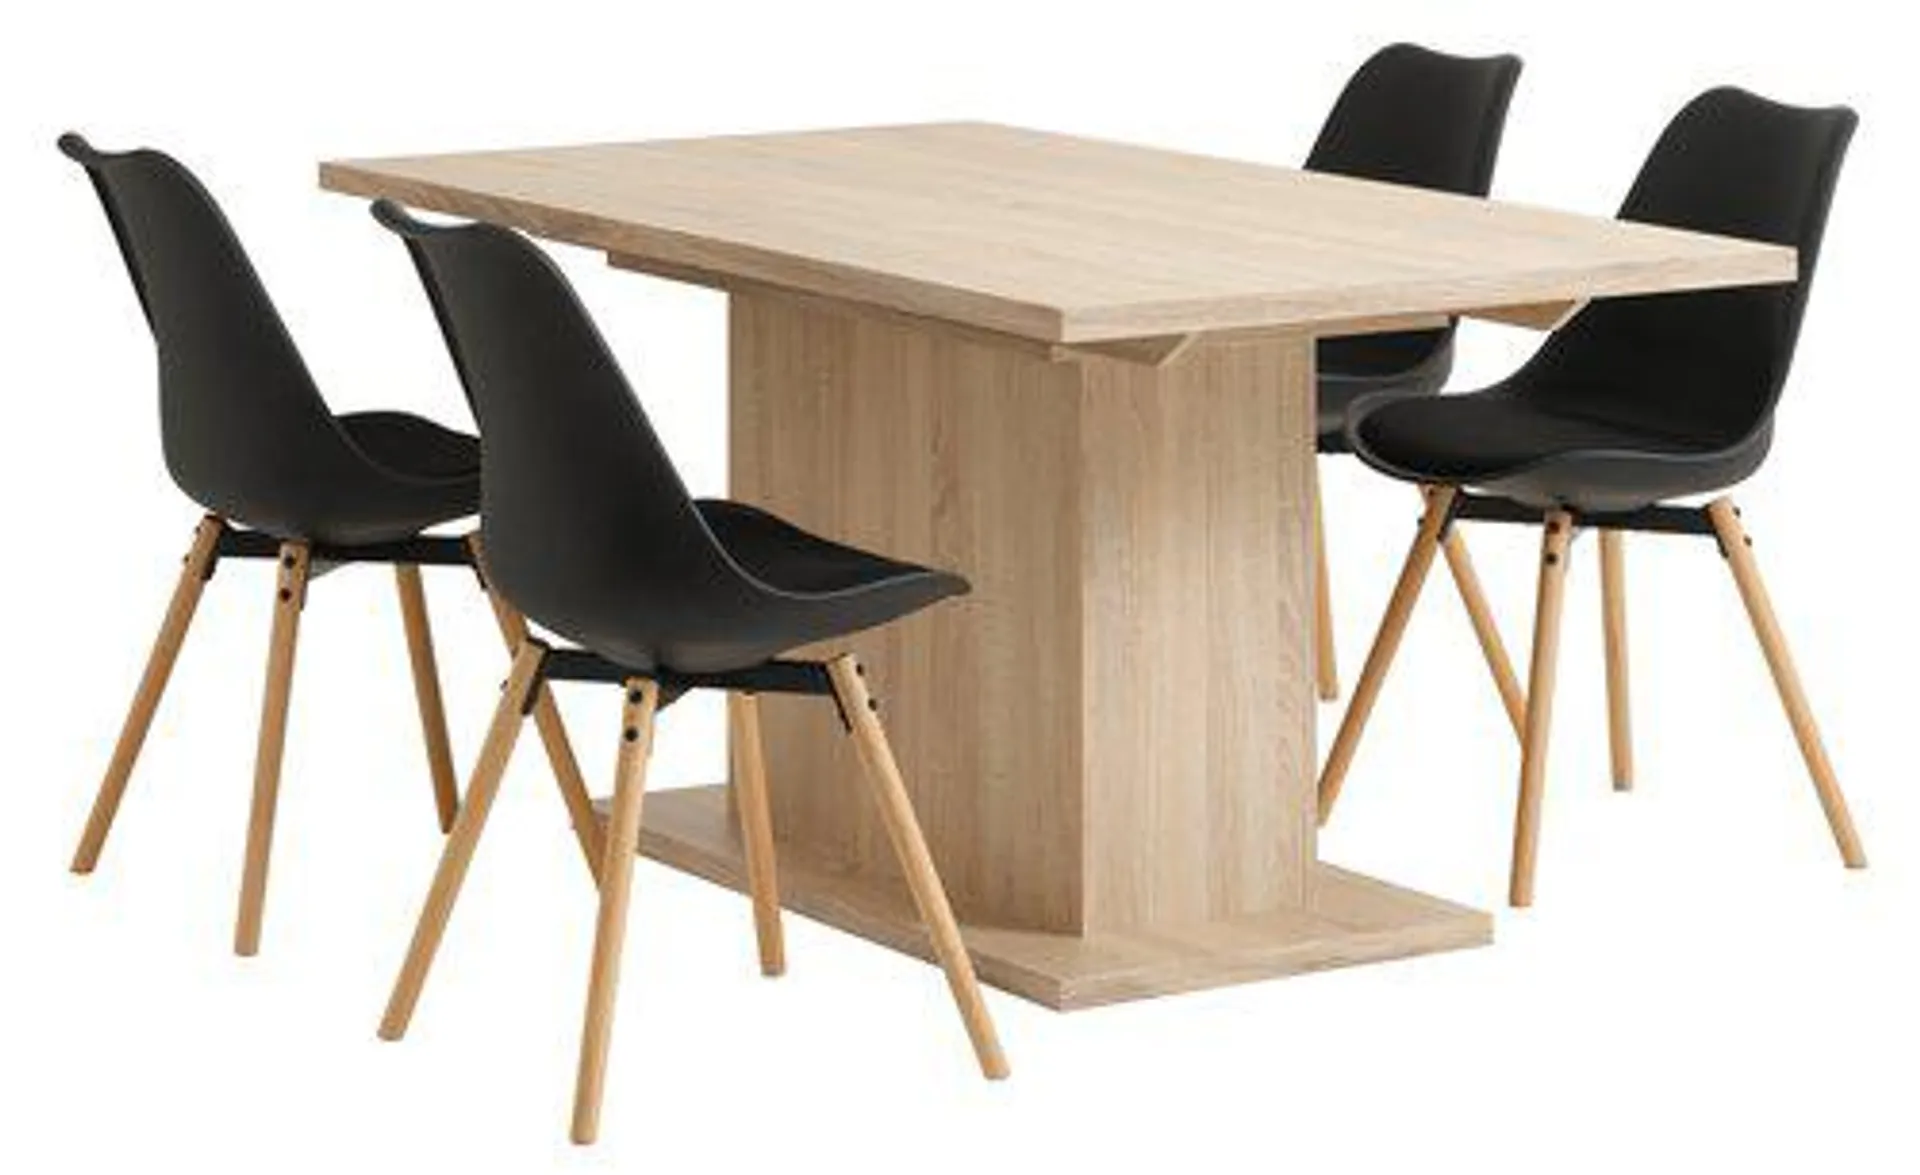 BIRKELSE H160/200 asztal tölgy + 4 KASTRUP szék fekete